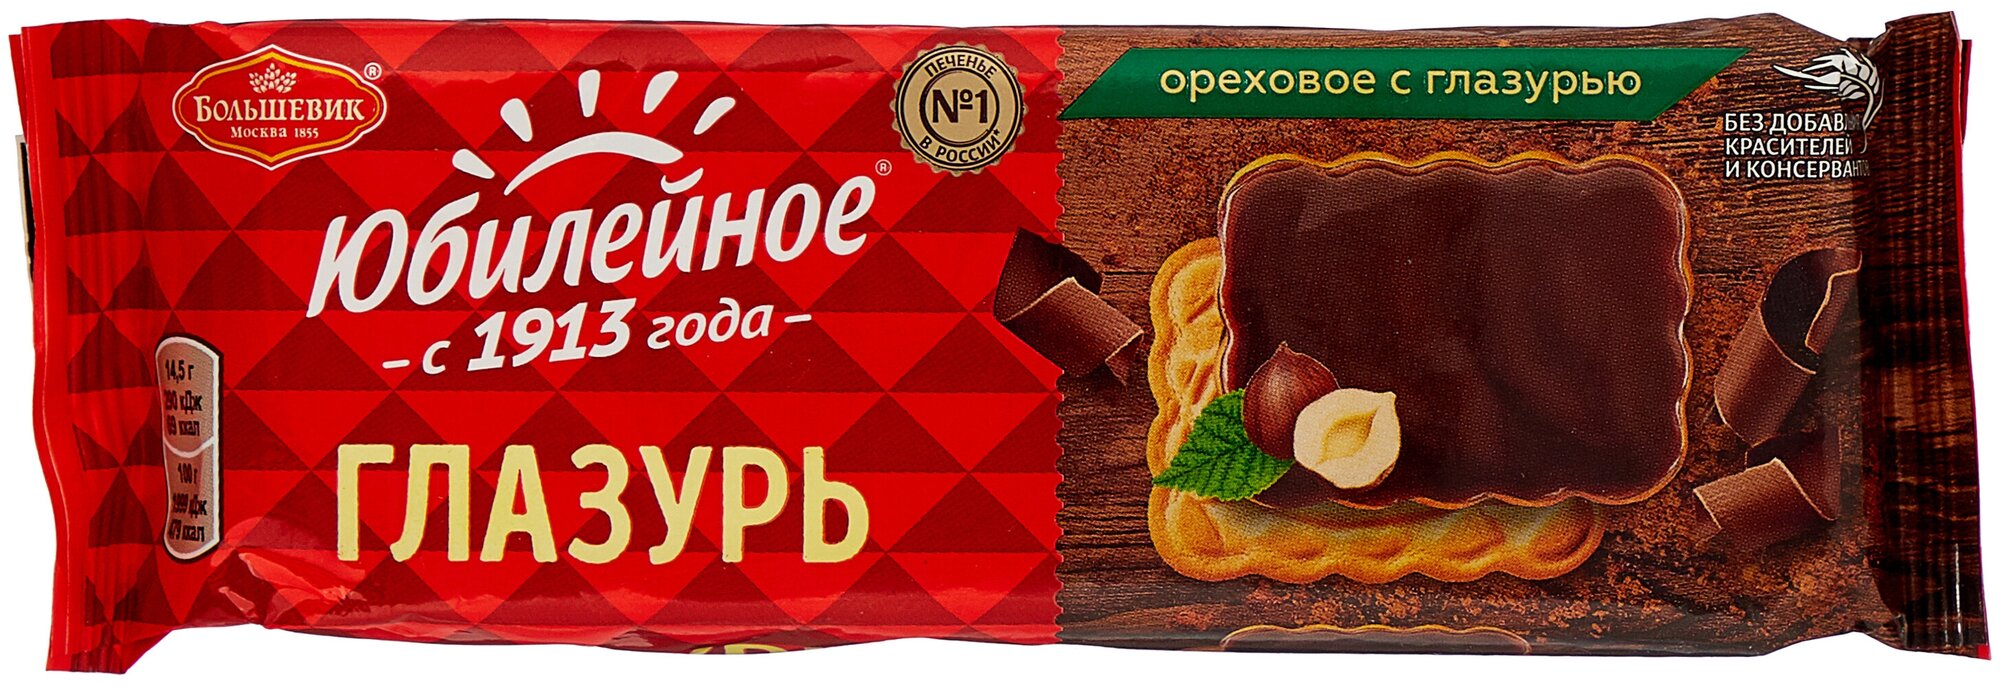 Печенье с темной глазурью Ореховое юбилейное, 116 г - JUBILEE